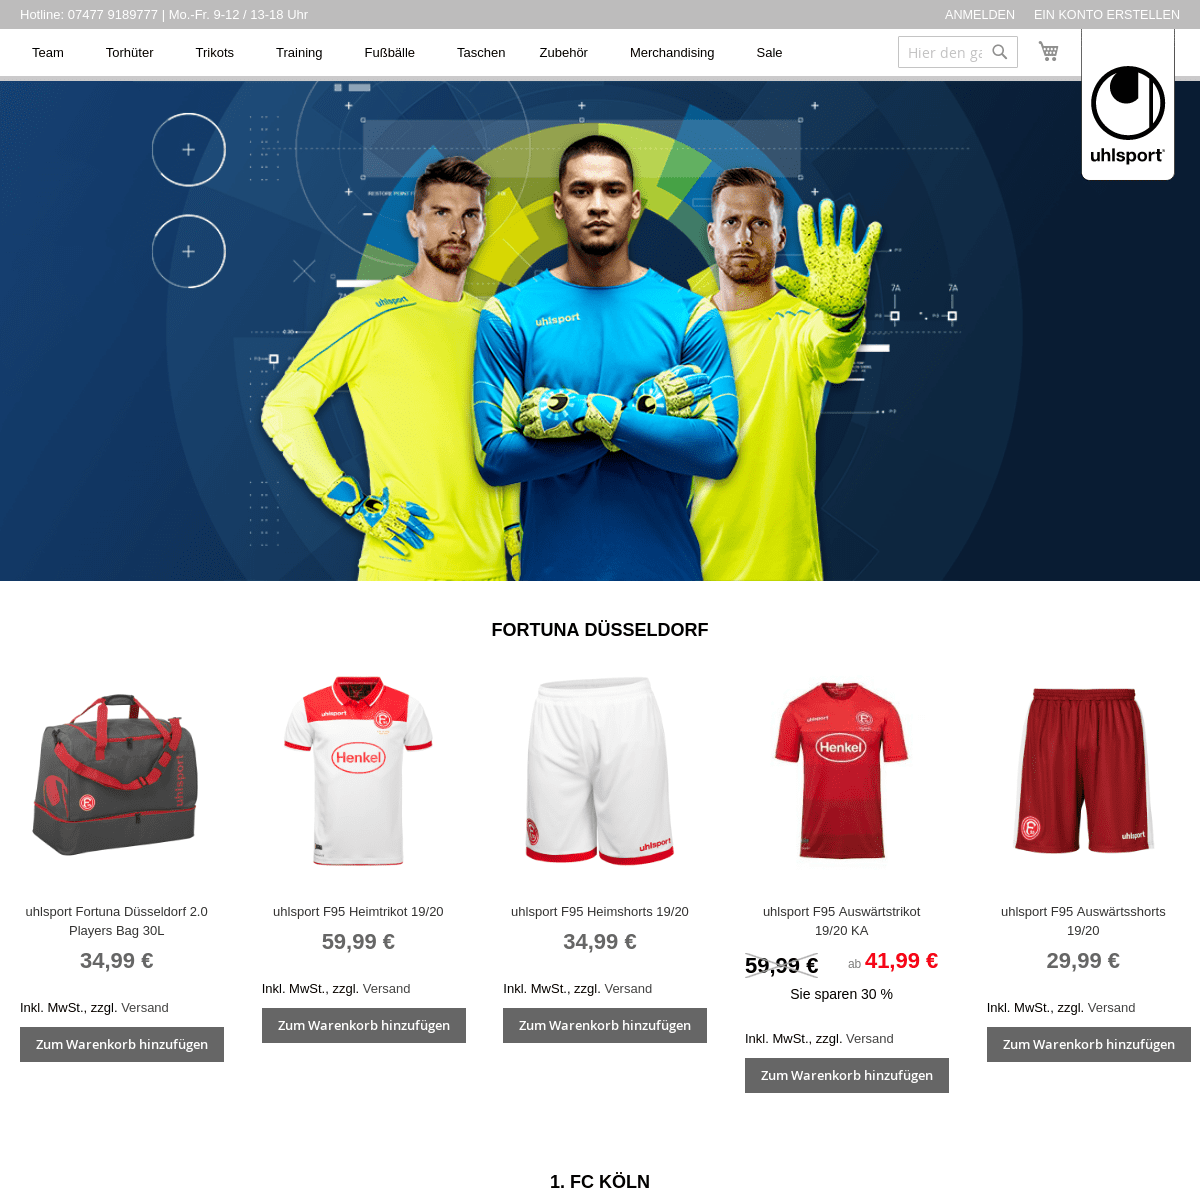 A complete backup of uhlsport-store.com